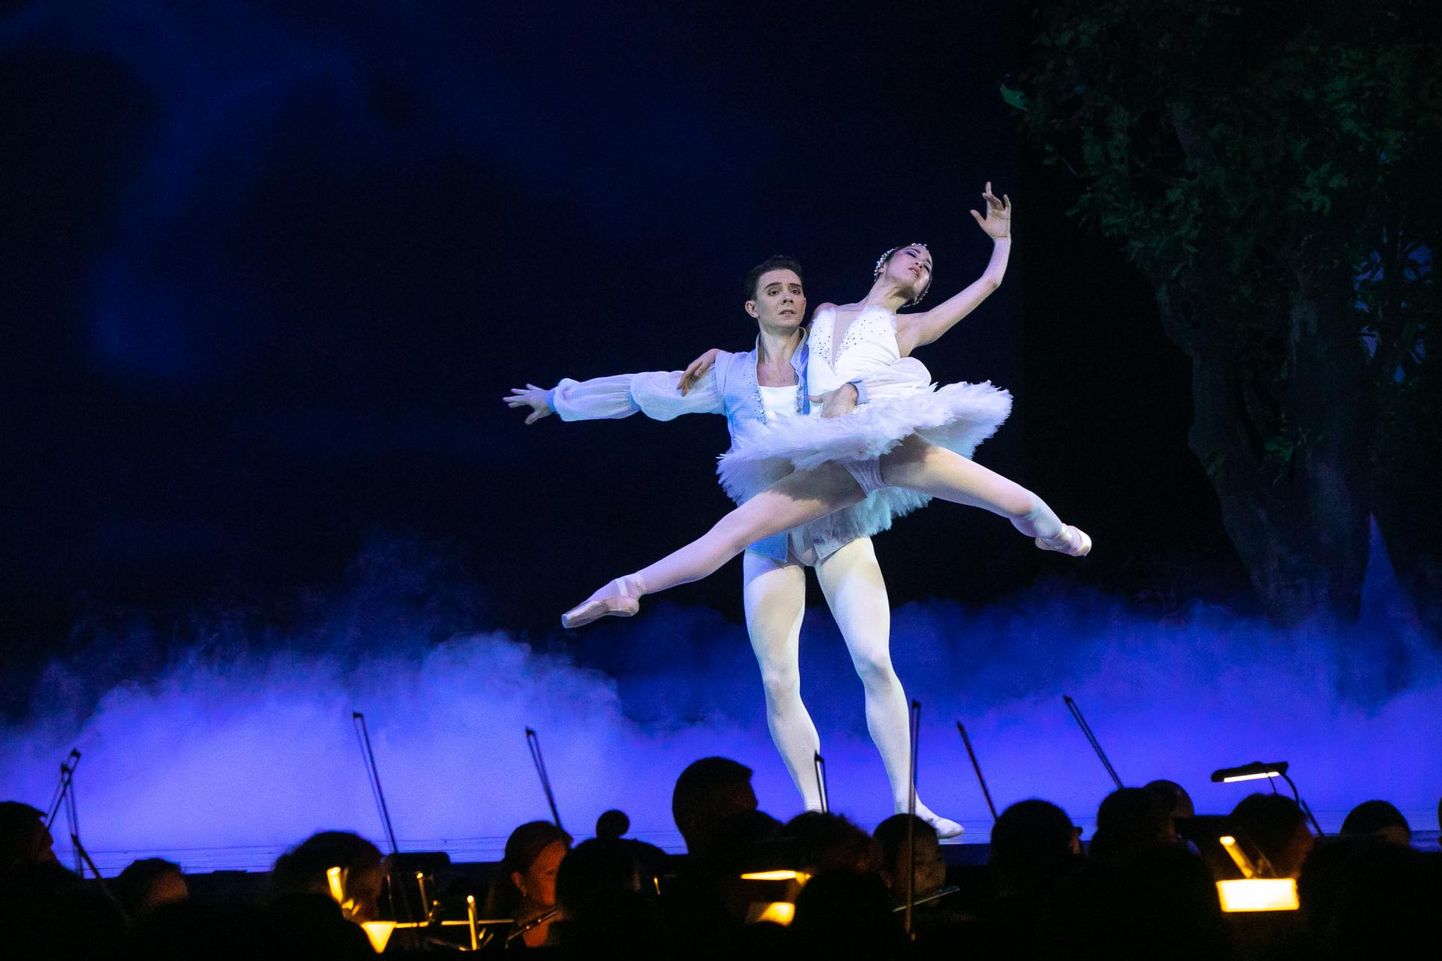 Rahvusooper Estonia “Luikede järve” baleriinid Ami Morita ja William Newton tõid Rakvere kultuurifestivalile suurlinna hõngu.